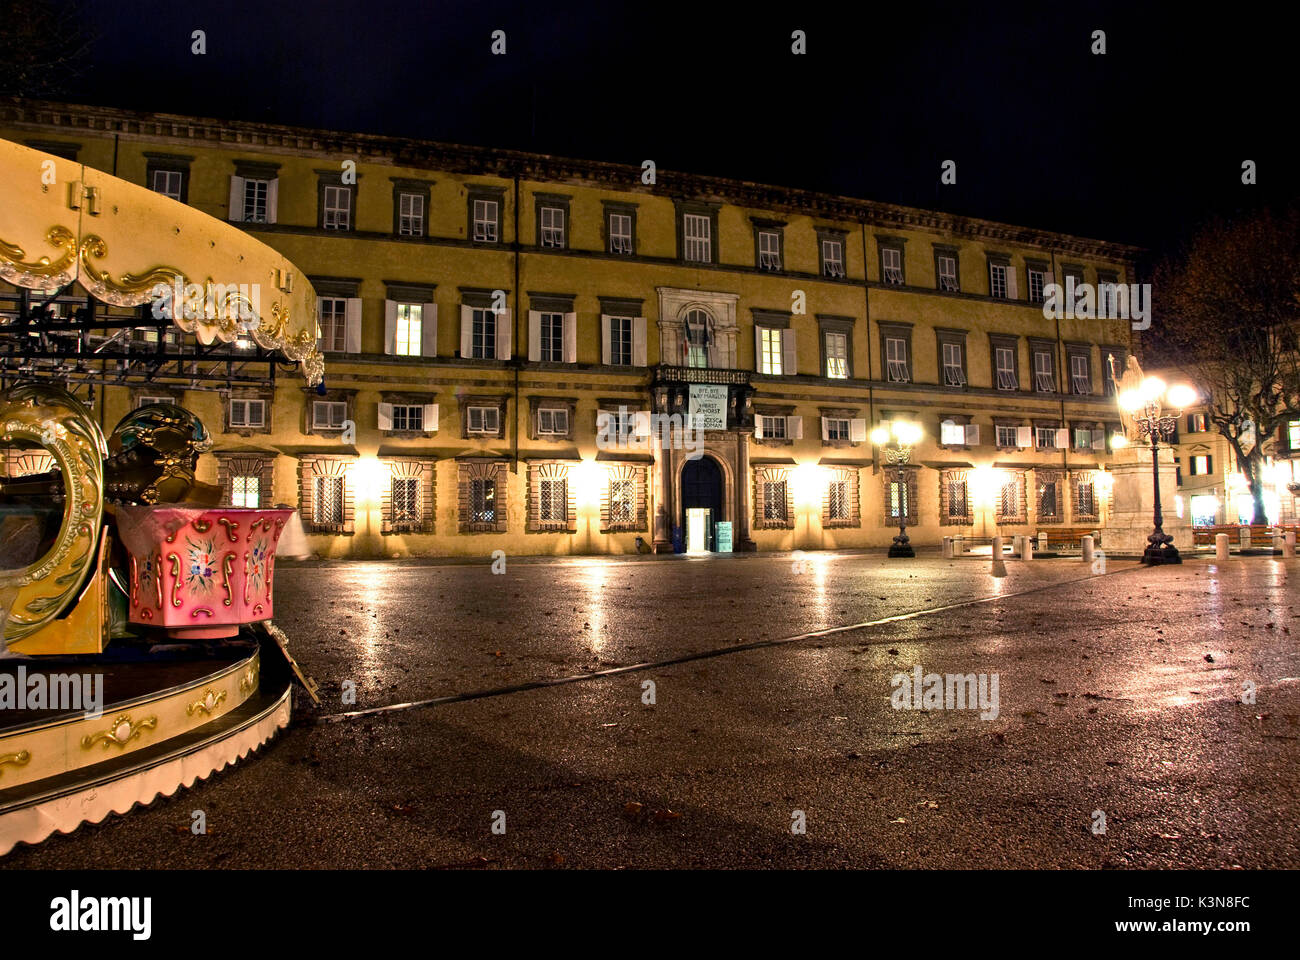 La Place Napoléon et Palais Ducal dans la vieille ville médiévale de Lucca, dans la nuit. La toscane, italie. Banque D'Images